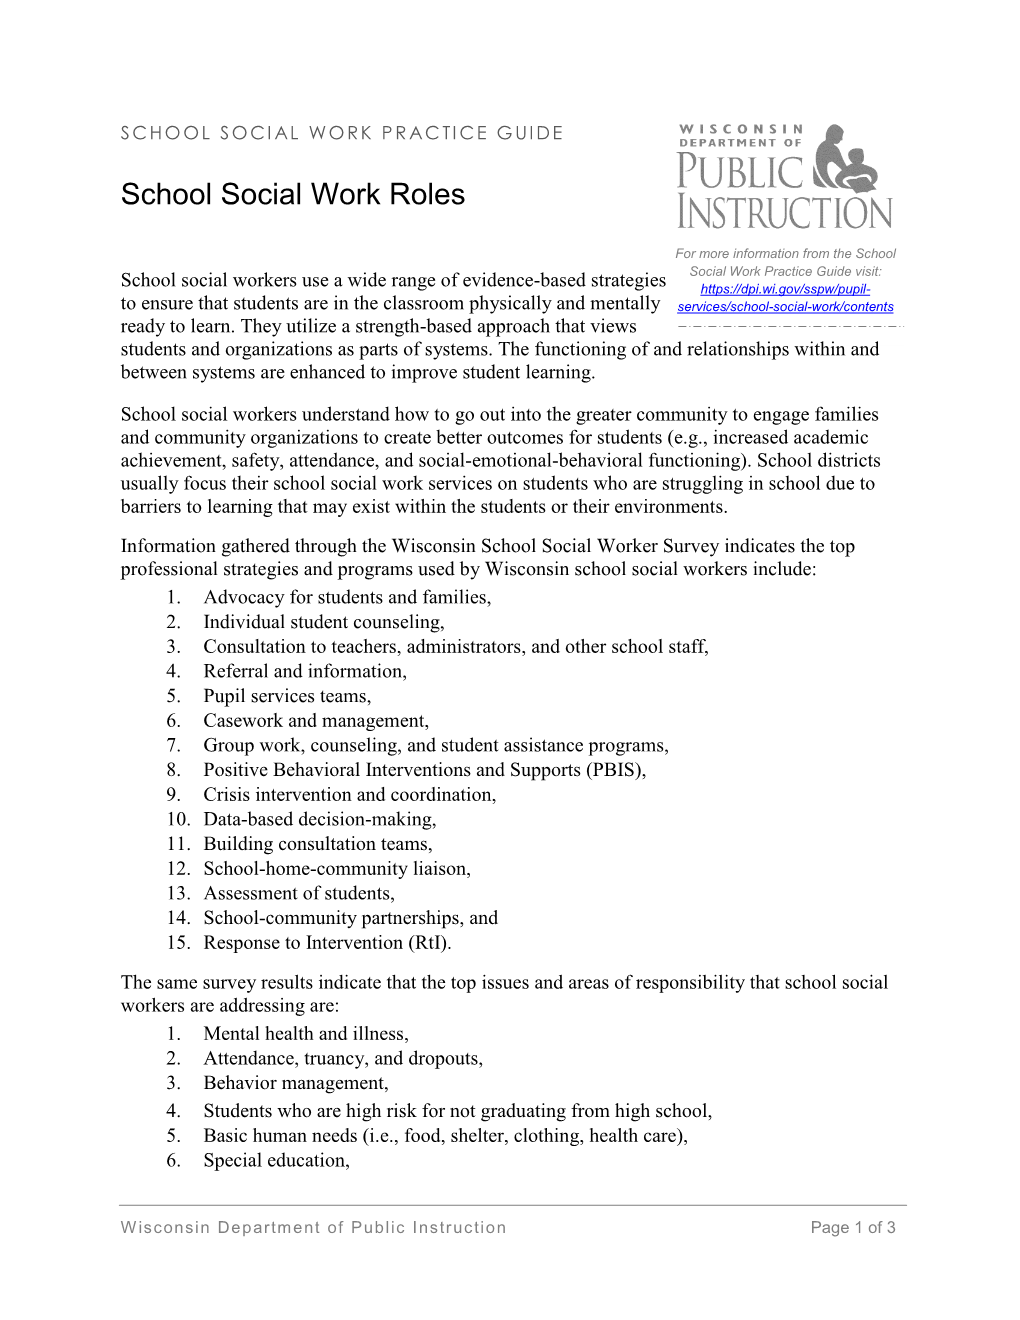 School Social Work Roles